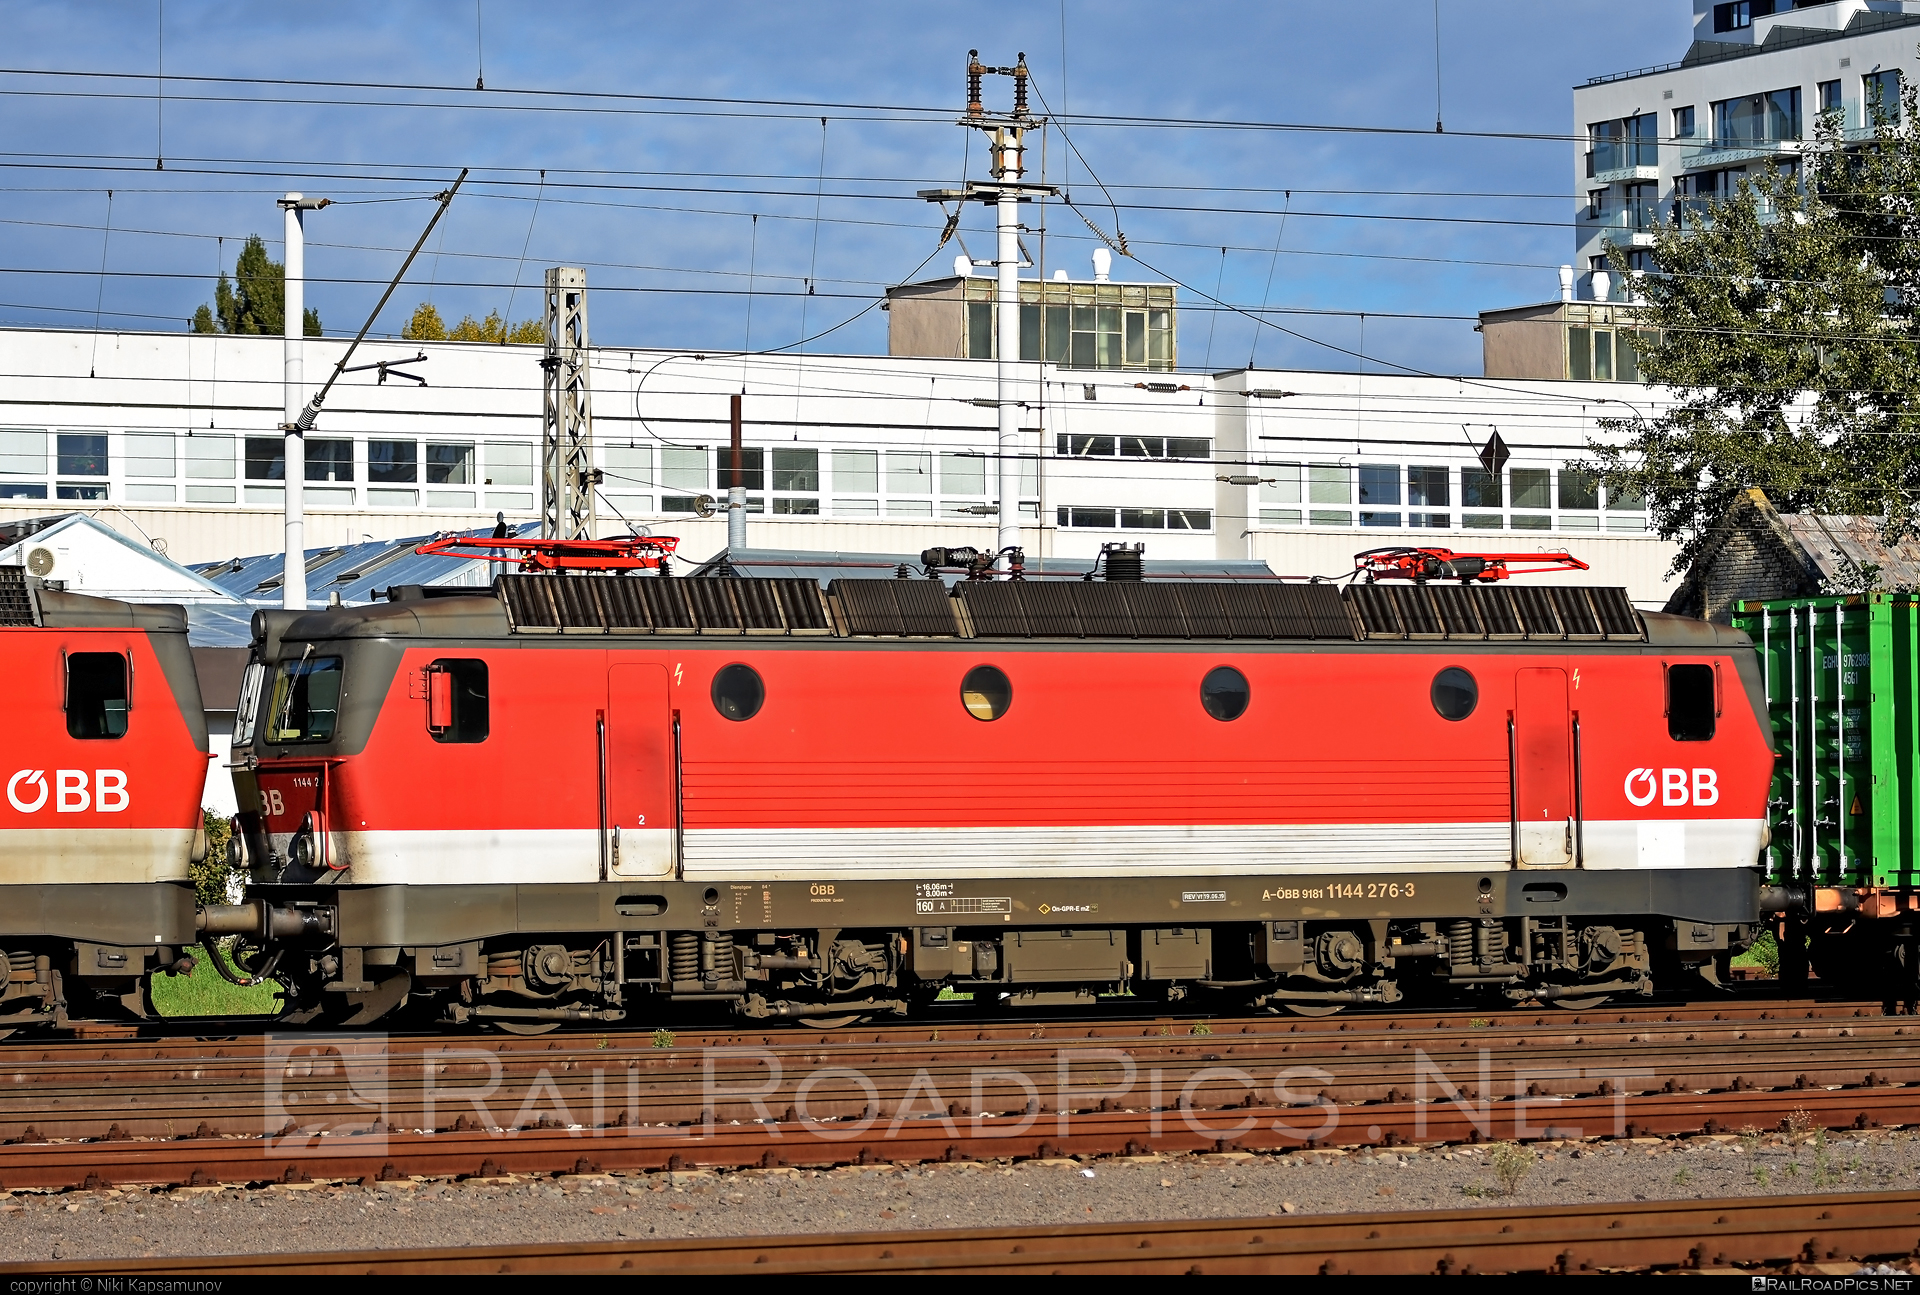 SGP ÖBB Class 1144 - 1144 276 operated by Rail Cargo Austria AG #obb #obbclass1144 #osterreichischebundesbahnen #sgp #sgp1144 #simmeringgrazpauker